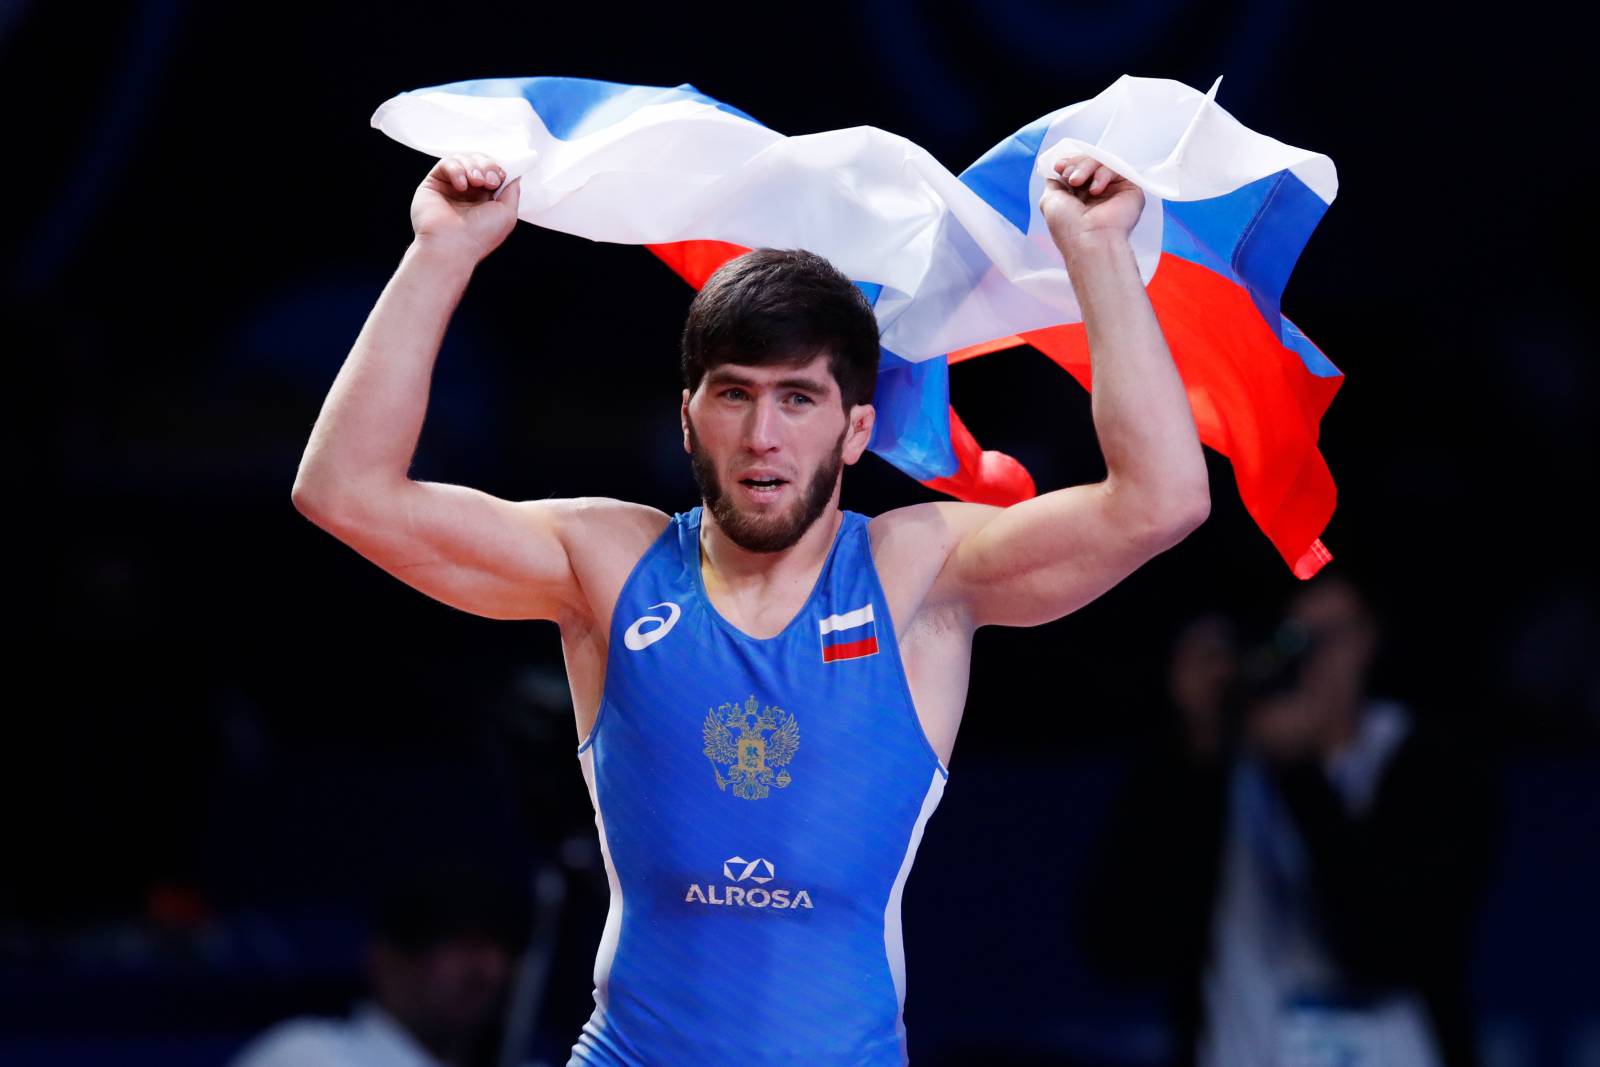 Борец Угуев вышел в финал Олимпийских игр в Токио. Найфонов остался в шаге от борьбы за золото